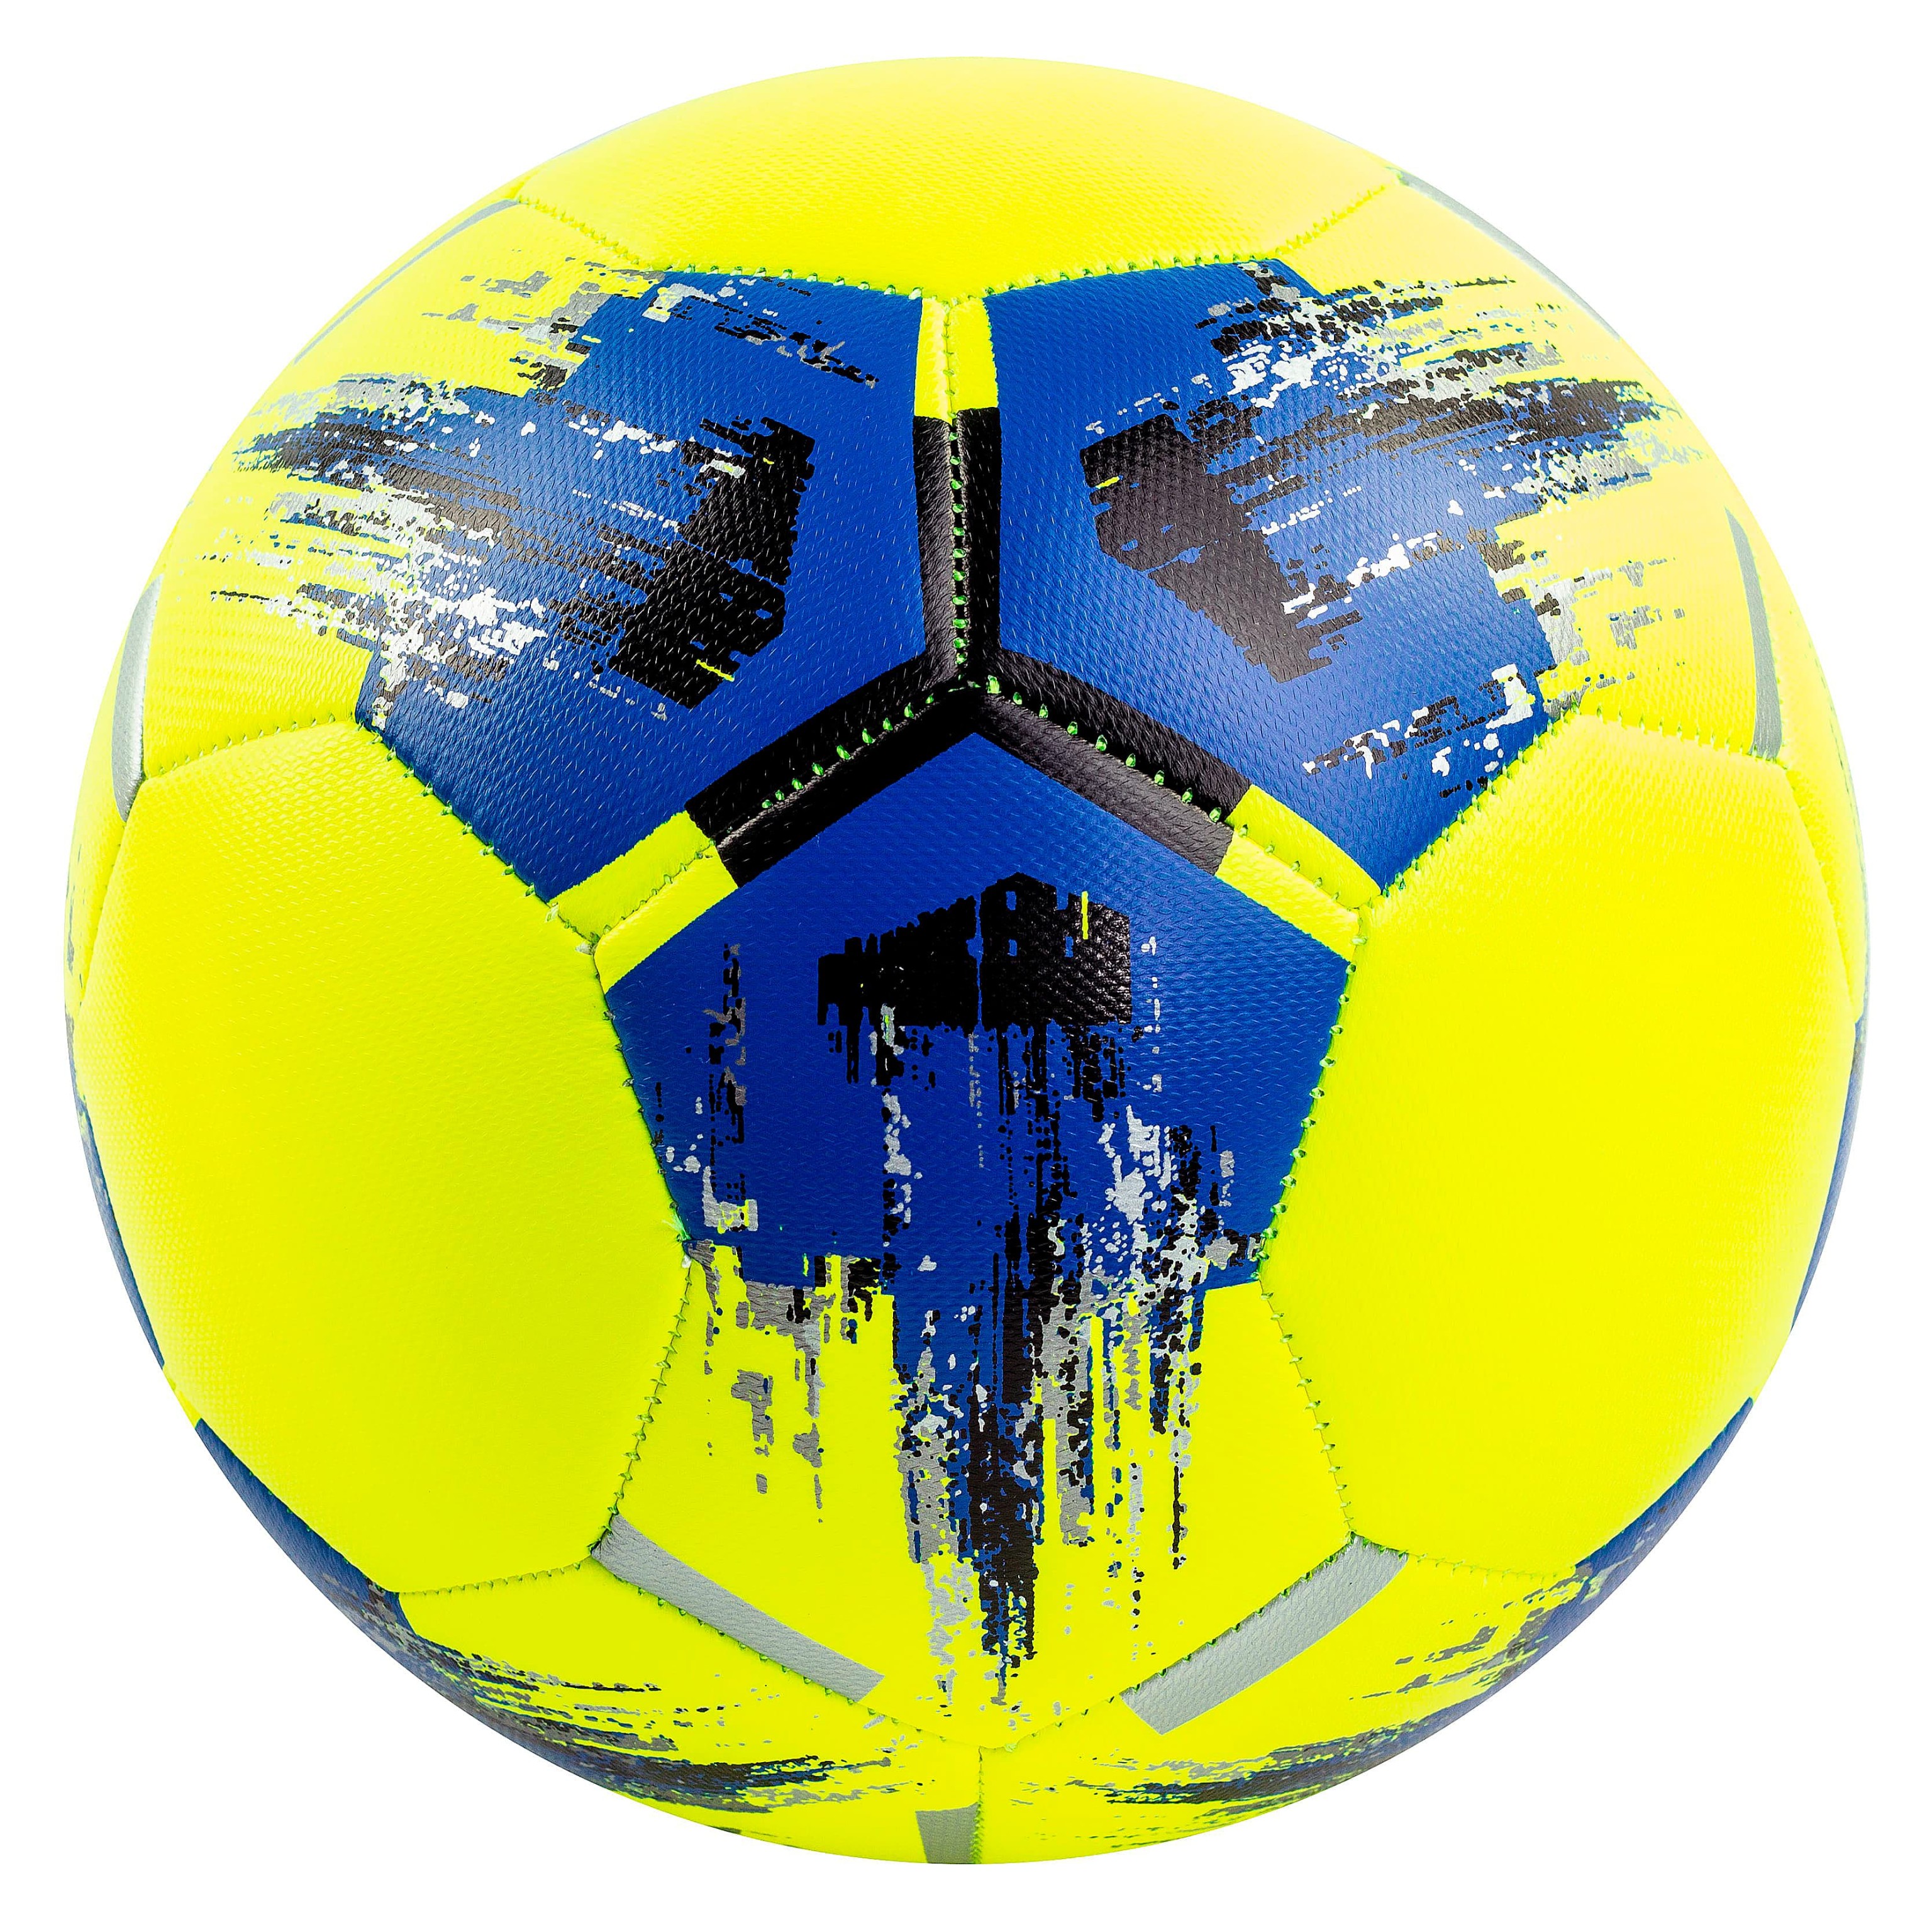 Футбольный мяч «Team Top Ball Replique»  F33962, р.5, 420 гр. / Микс